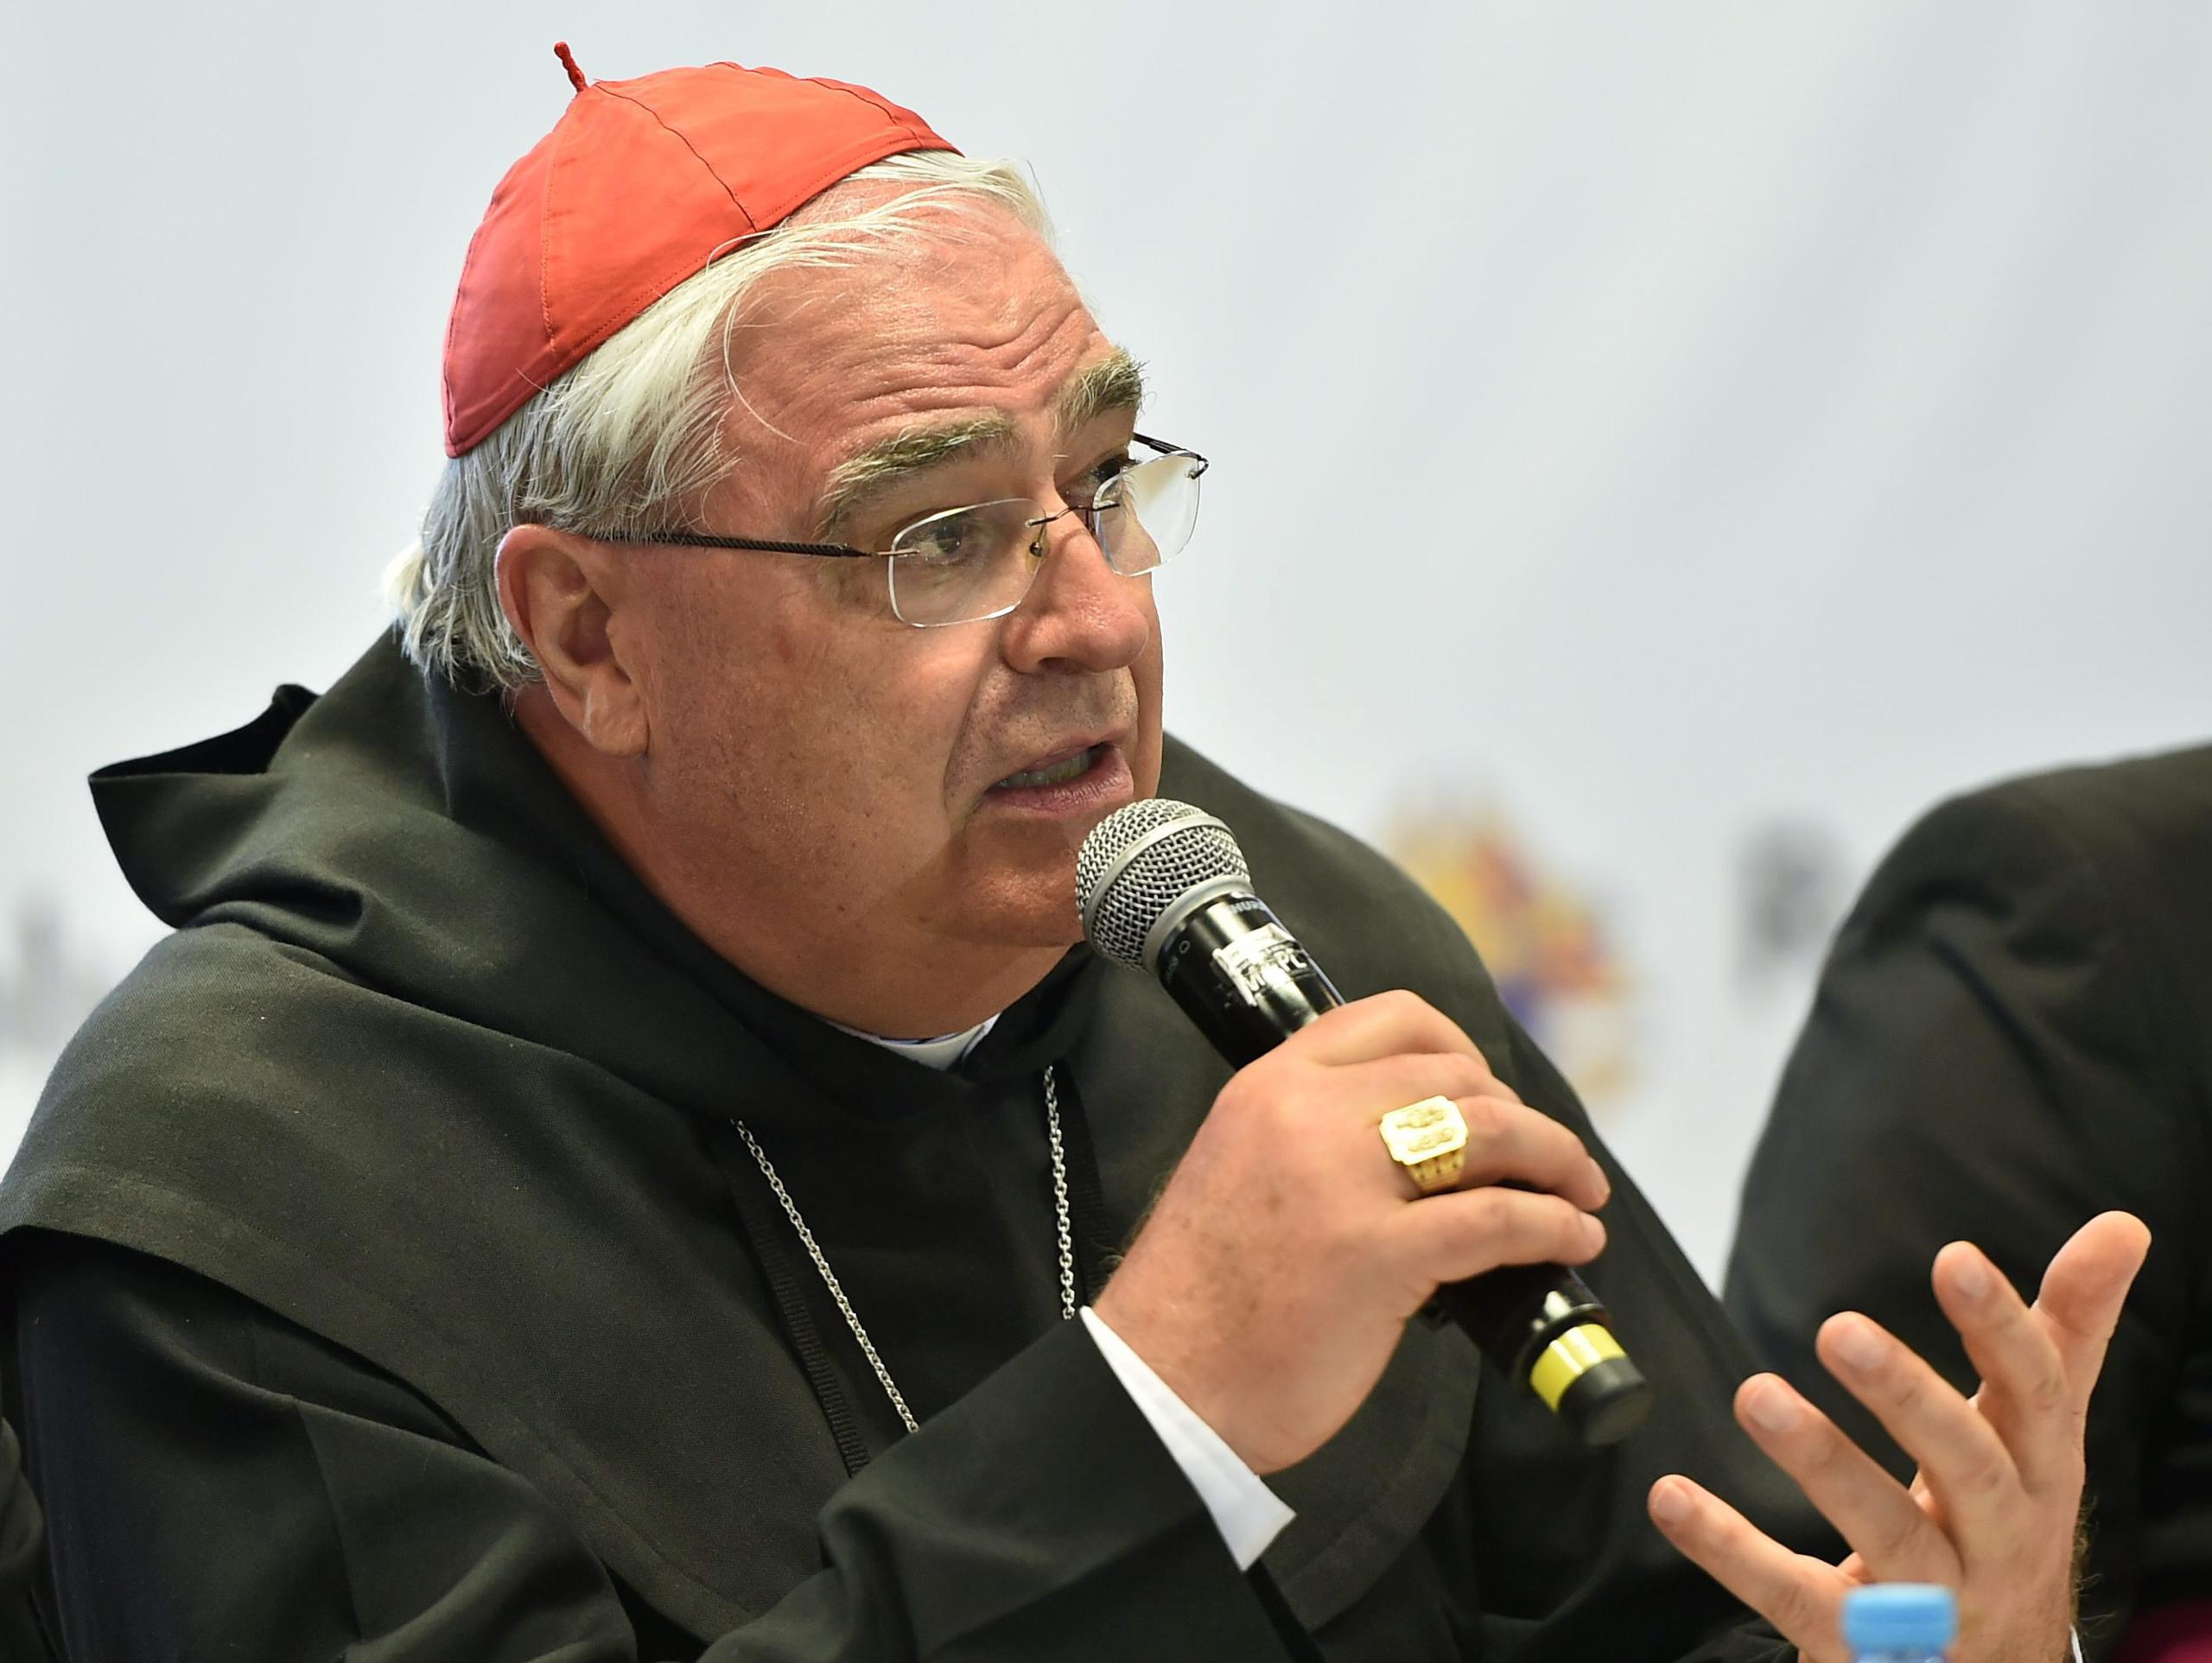 Según Se informó, el cardenal español José Luis Lacunza dejó en el obispado su cartera y teléfono celular.